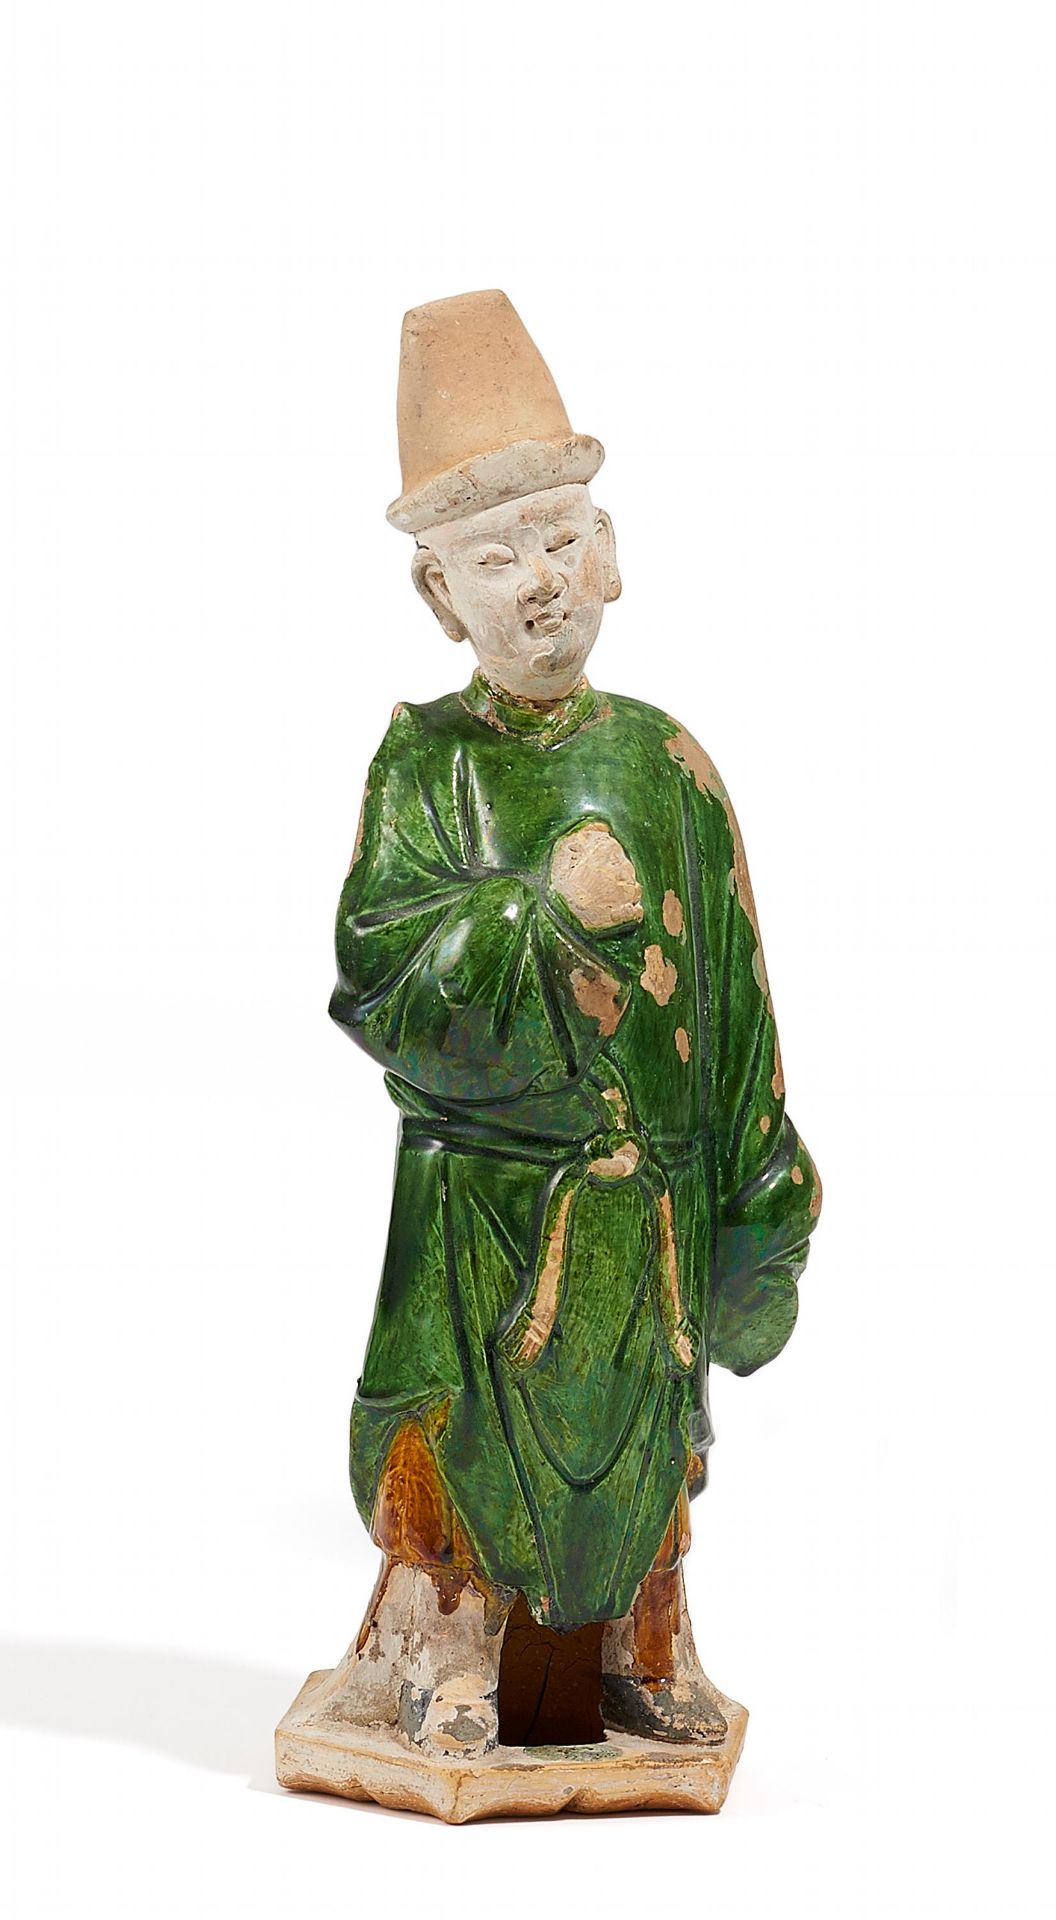 PFERDEKNECHT MIT HOHEM HUT. China. Ming-Dynastie. Keramik mit grüner und bernsteingelber Glasur,